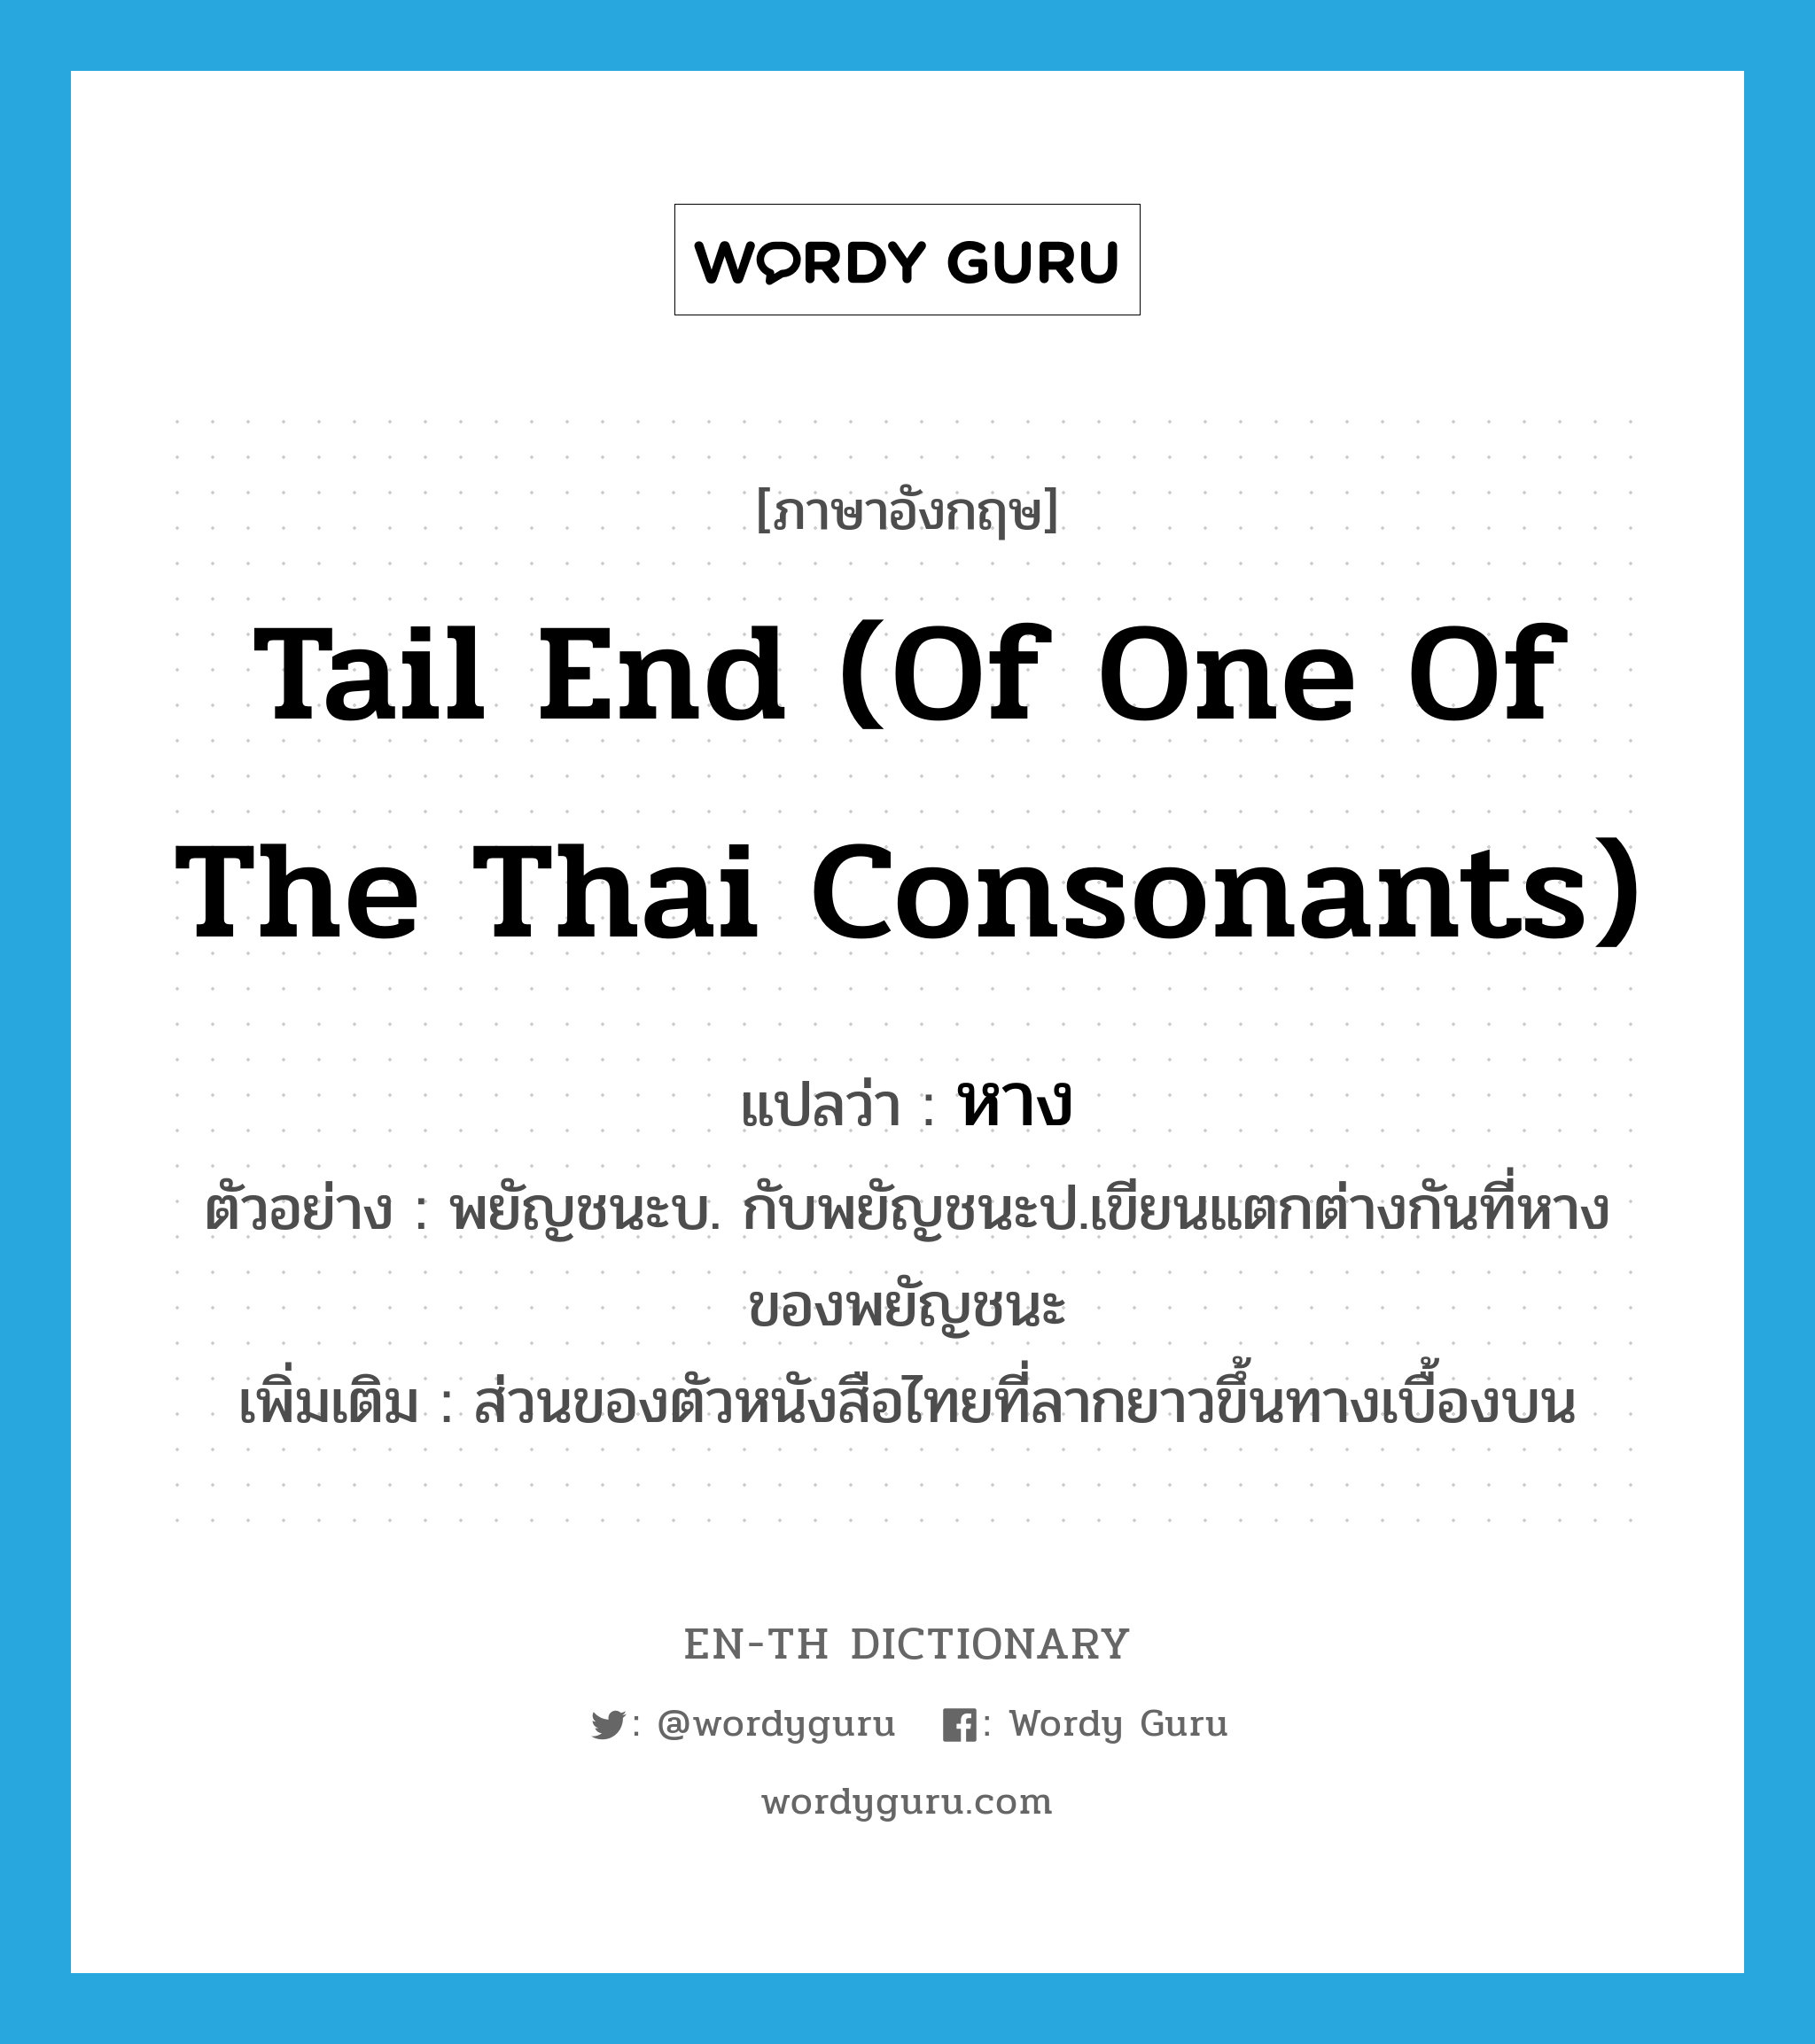 หาง ภาษาอังกฤษ?, คำศัพท์ภาษาอังกฤษ หาง แปลว่า tail end (of one of the Thai consonants) ประเภท N ตัวอย่าง พยัญชนะบ. กับพยัญชนะป.เขียนแตกต่างกันที่หางของพยัญชนะ เพิ่มเติม ส่วนของตัวหนังสือไทยที่ลากยาวขึ้นทางเบื้องบน หมวด N